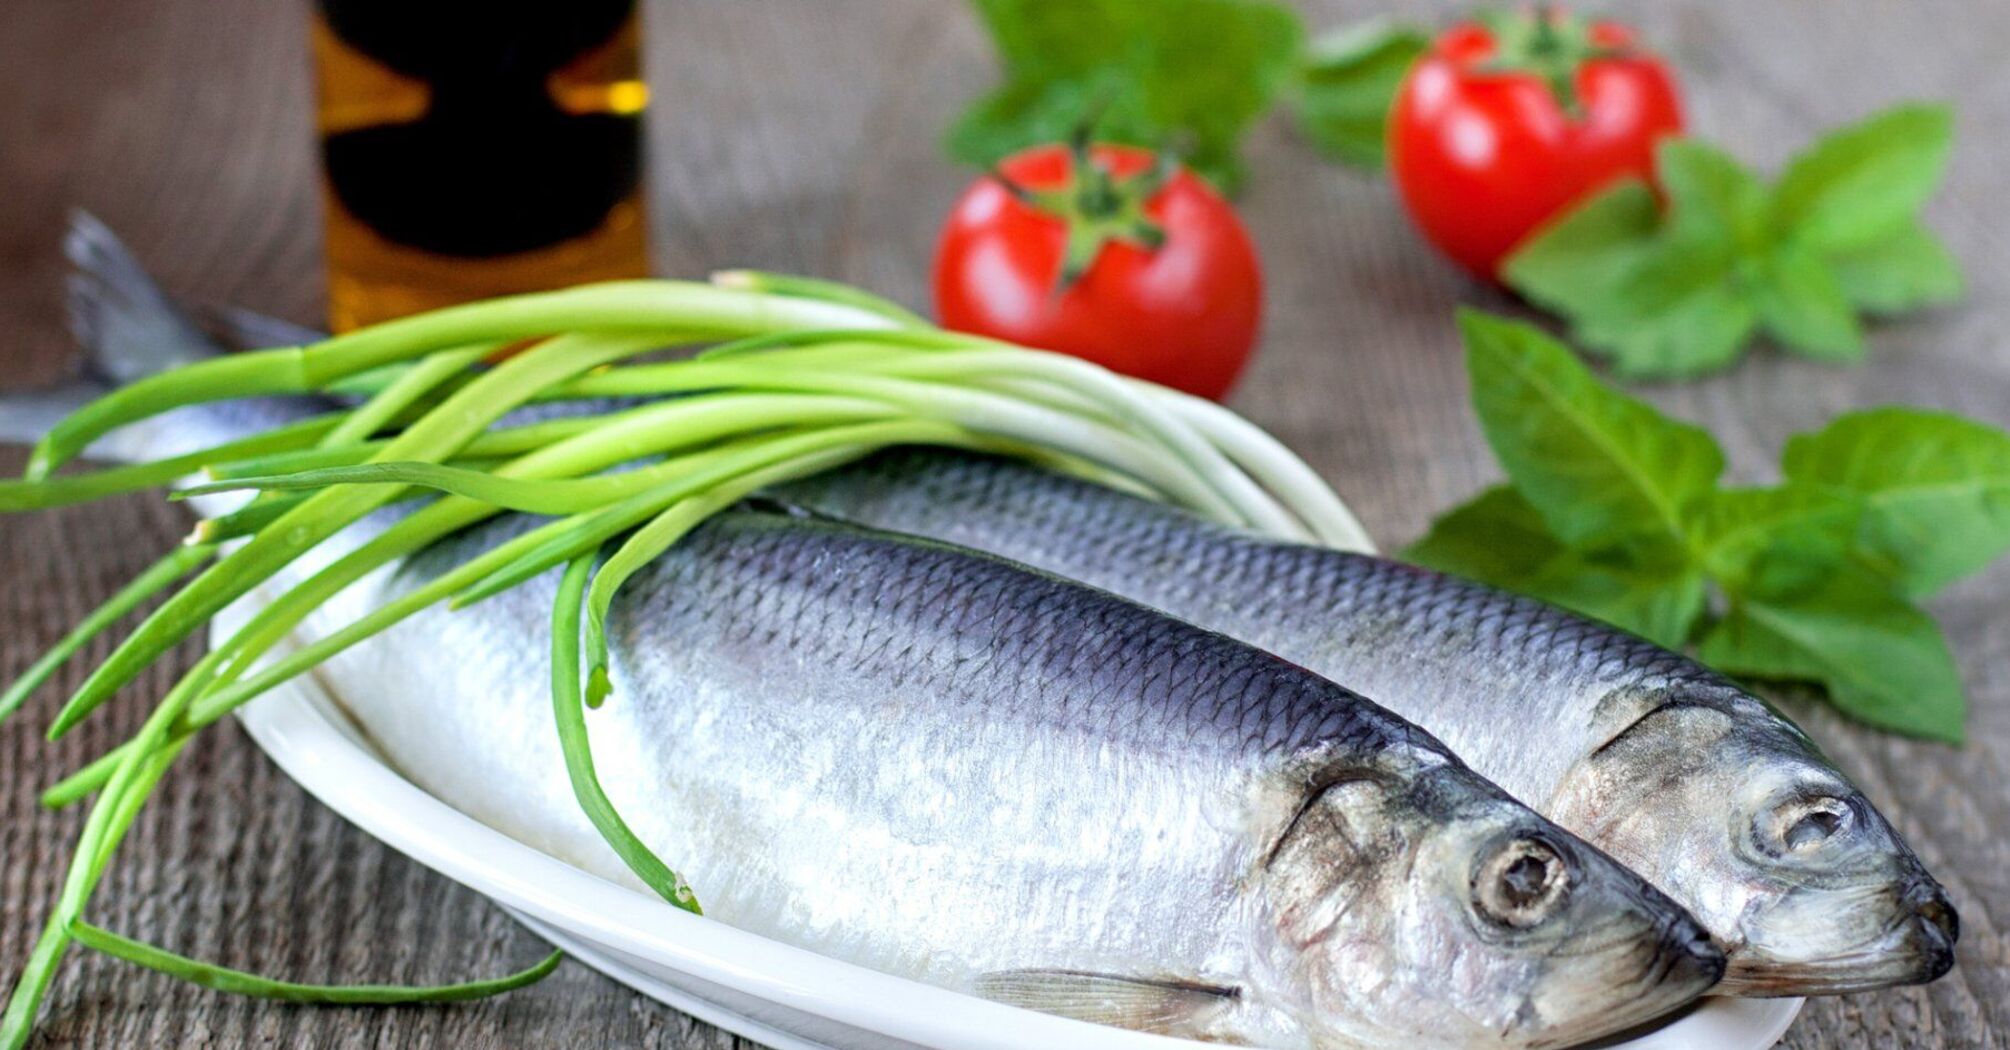 Dietetycy nazwali rybę budżetową, która jest niezwykle zdrowa